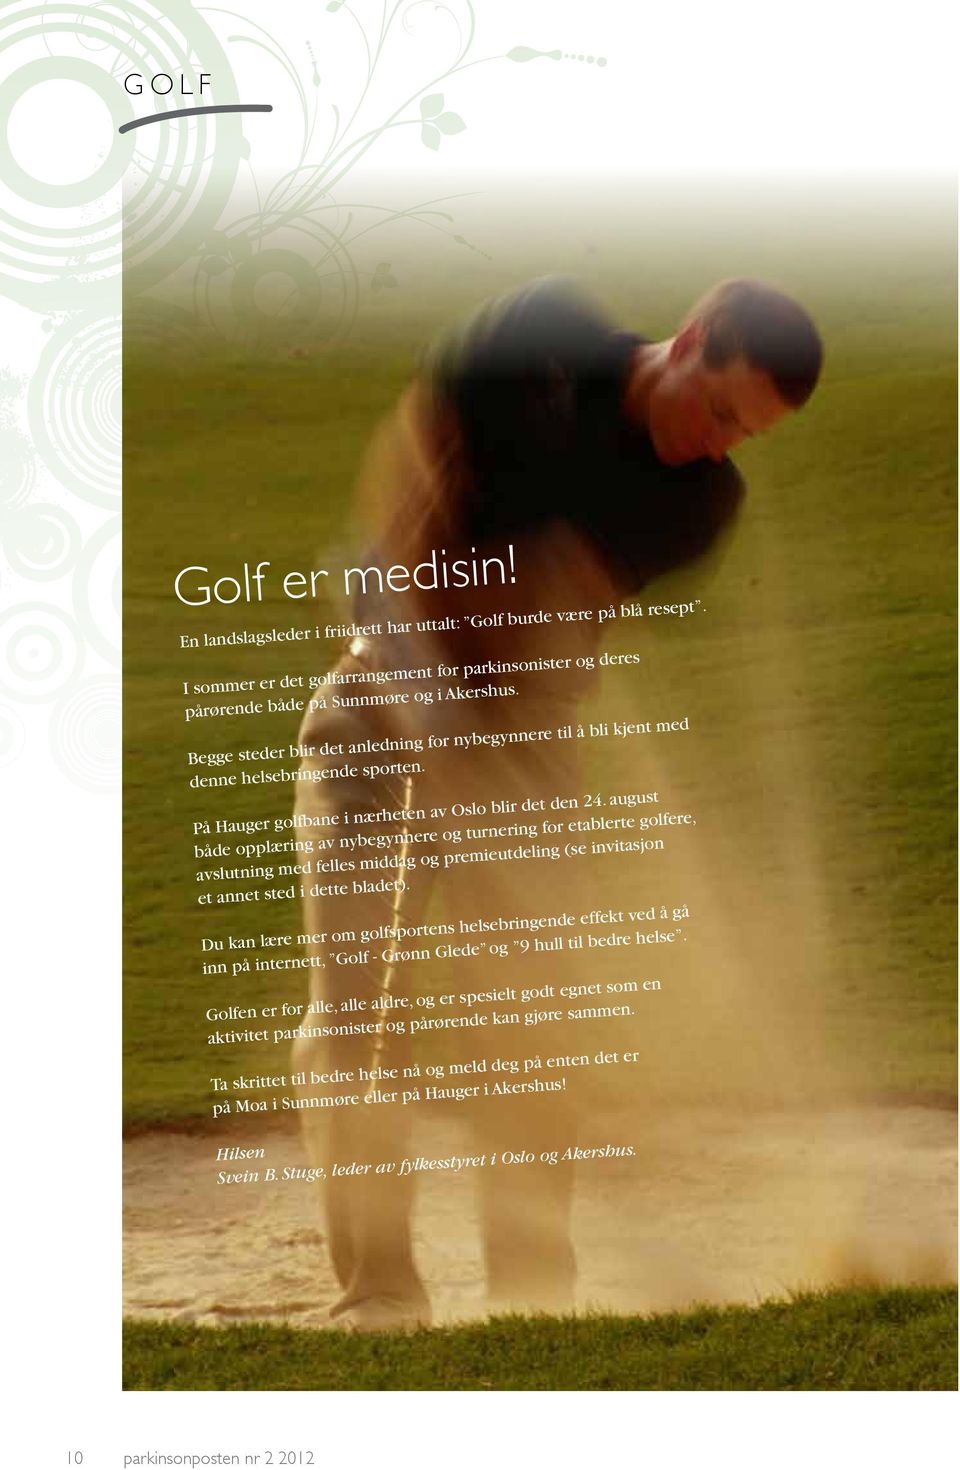 august både opplæring av nybegynnere og turnering for etablerte golfere, avslutning med felles middag og premieutdeling (se invitasjon et annet sted i dette bladet).